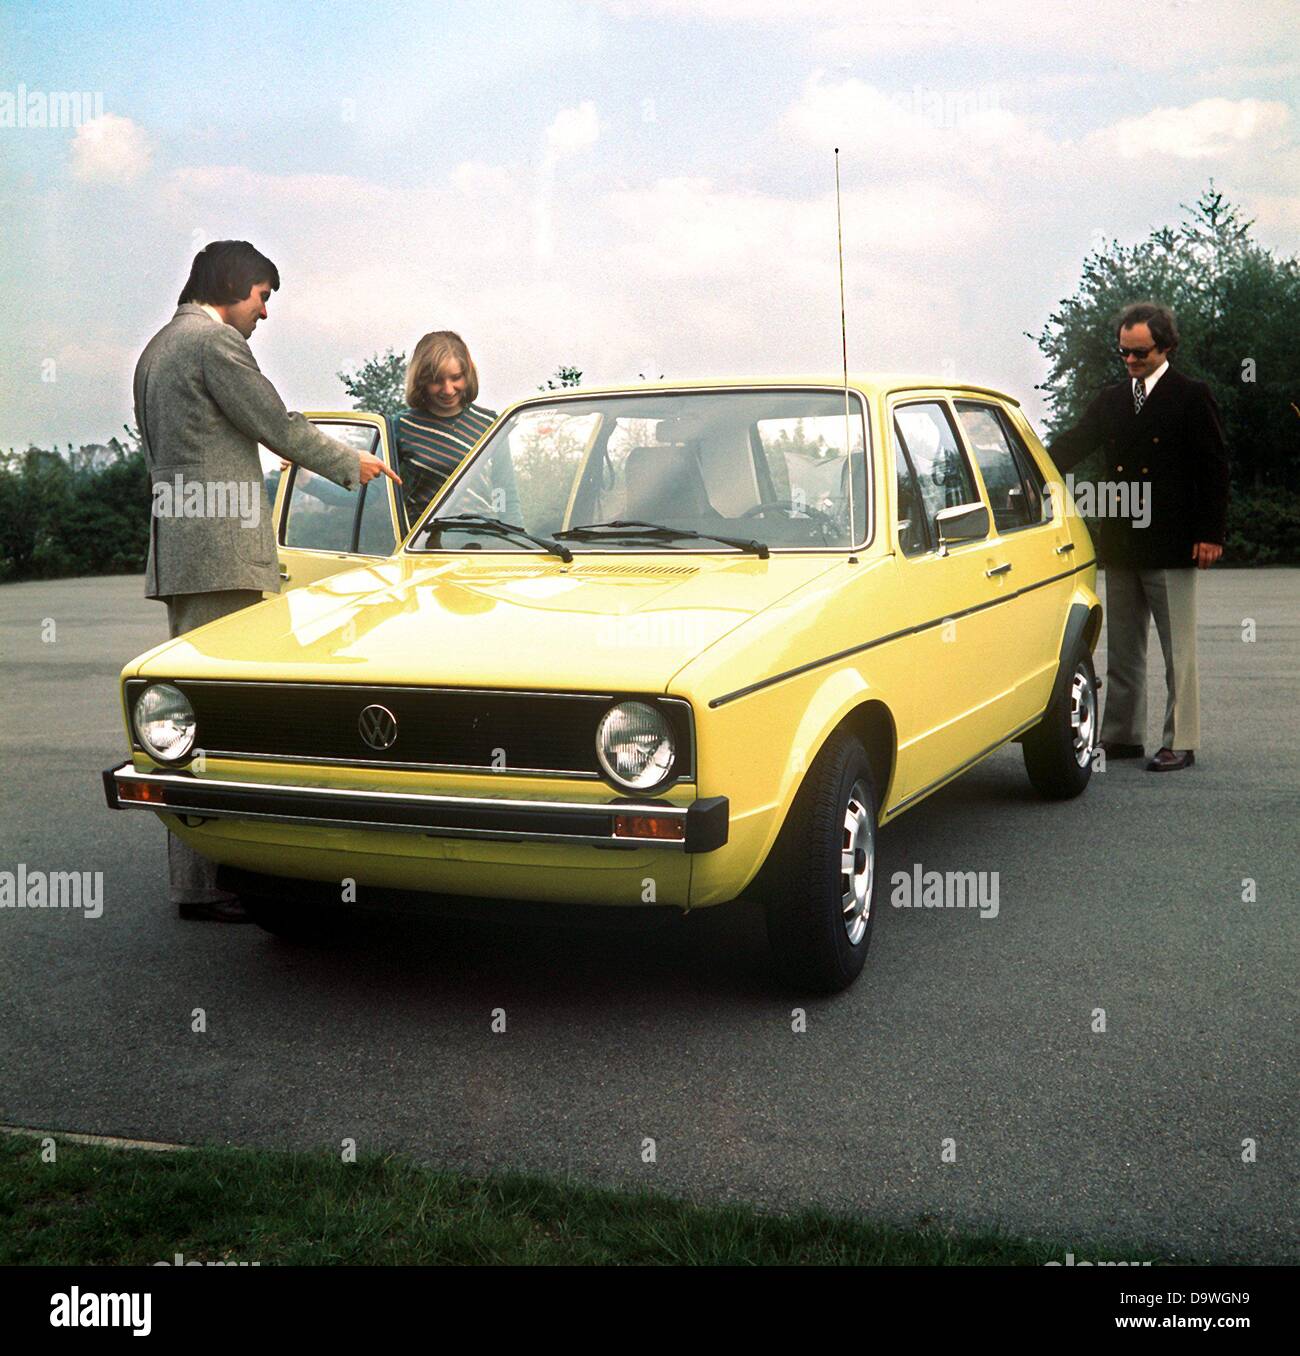 Une VW Golf jaune (photo non datée de 1970). Banque D'Images